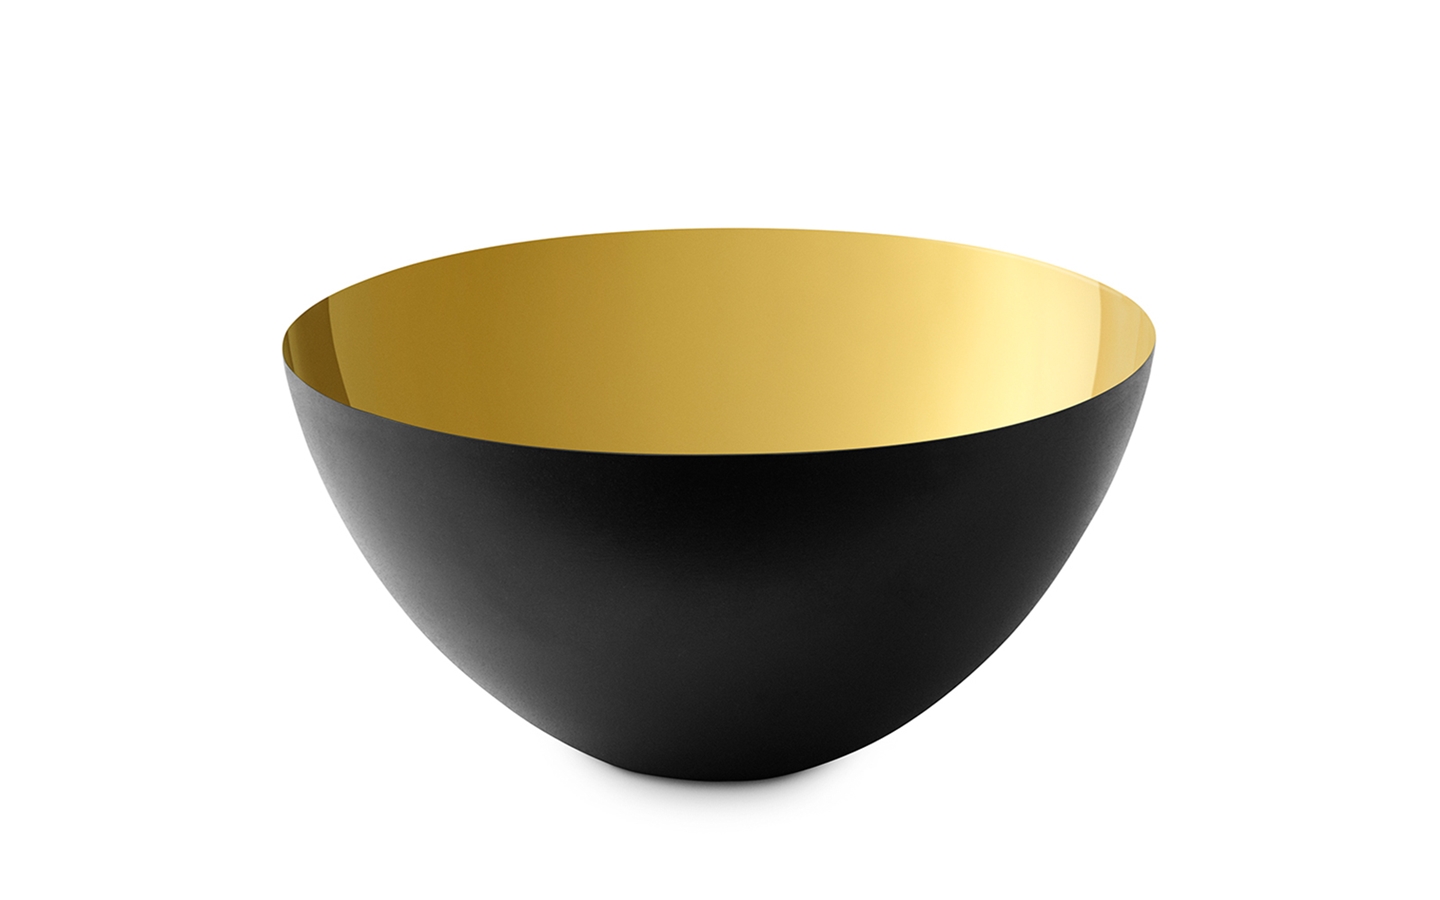 Normann Copenhagen - Krenit Bowl 25 cm - Gold